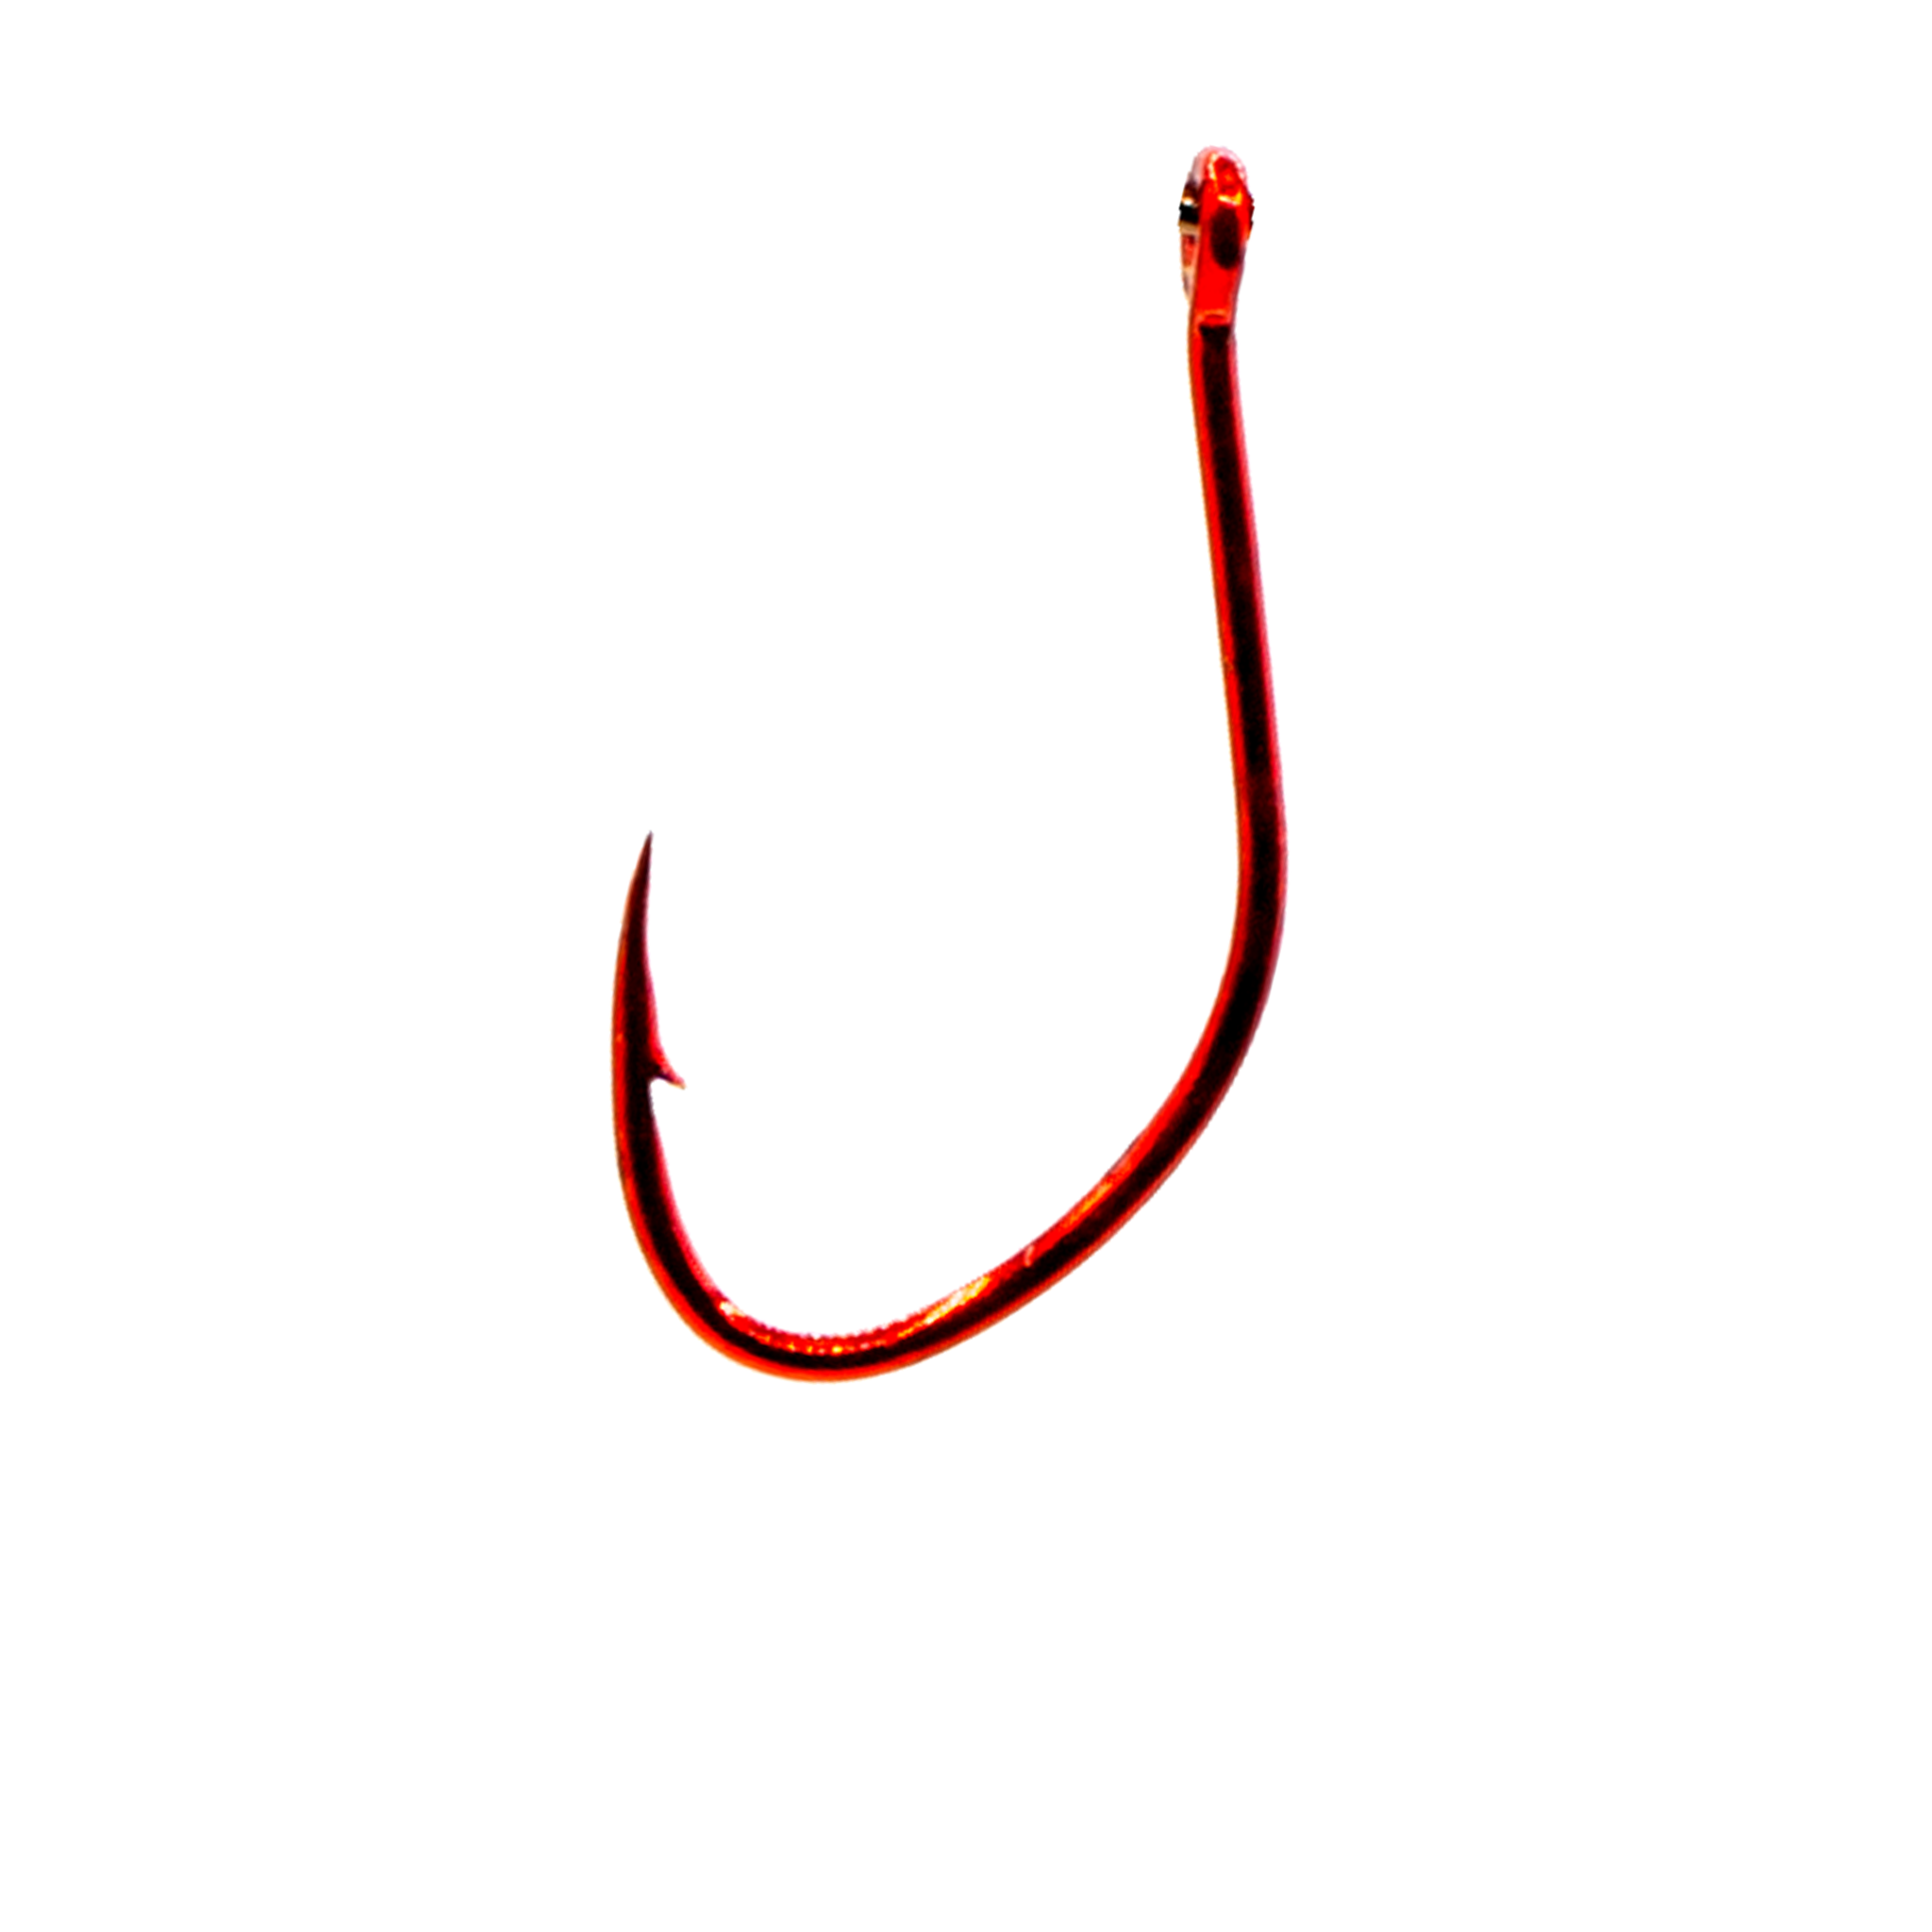 6th Sense Panfish Red Bait Hook 4